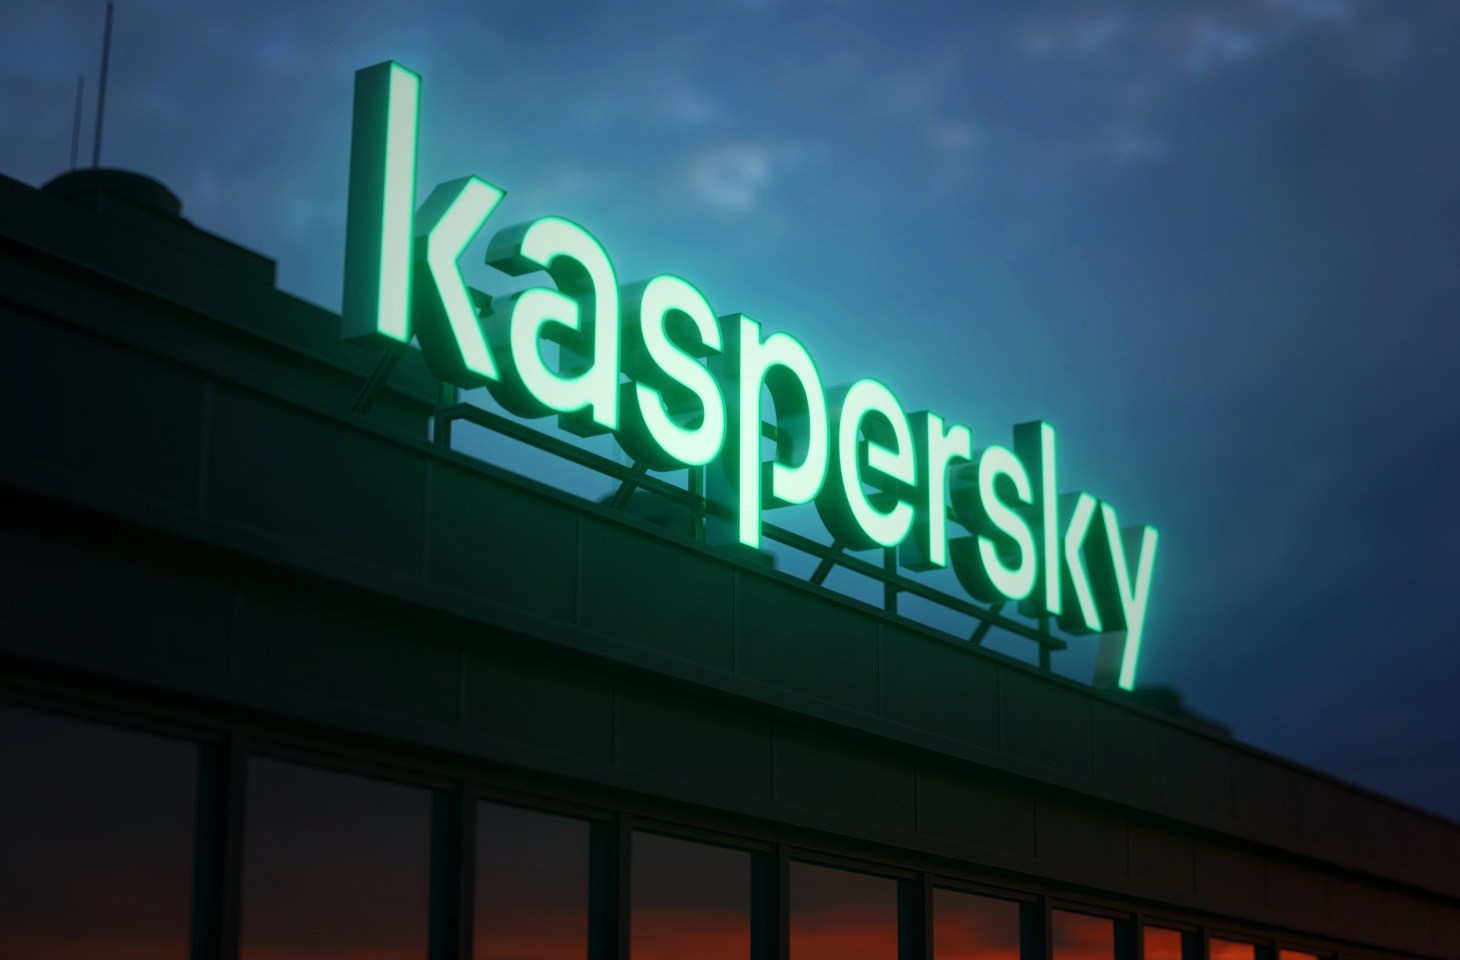 Kaspersky, takip yazılımı eğitimi için INTERPOL ve sivil toplum kuruluşlarıyla iş birliği yapıyor